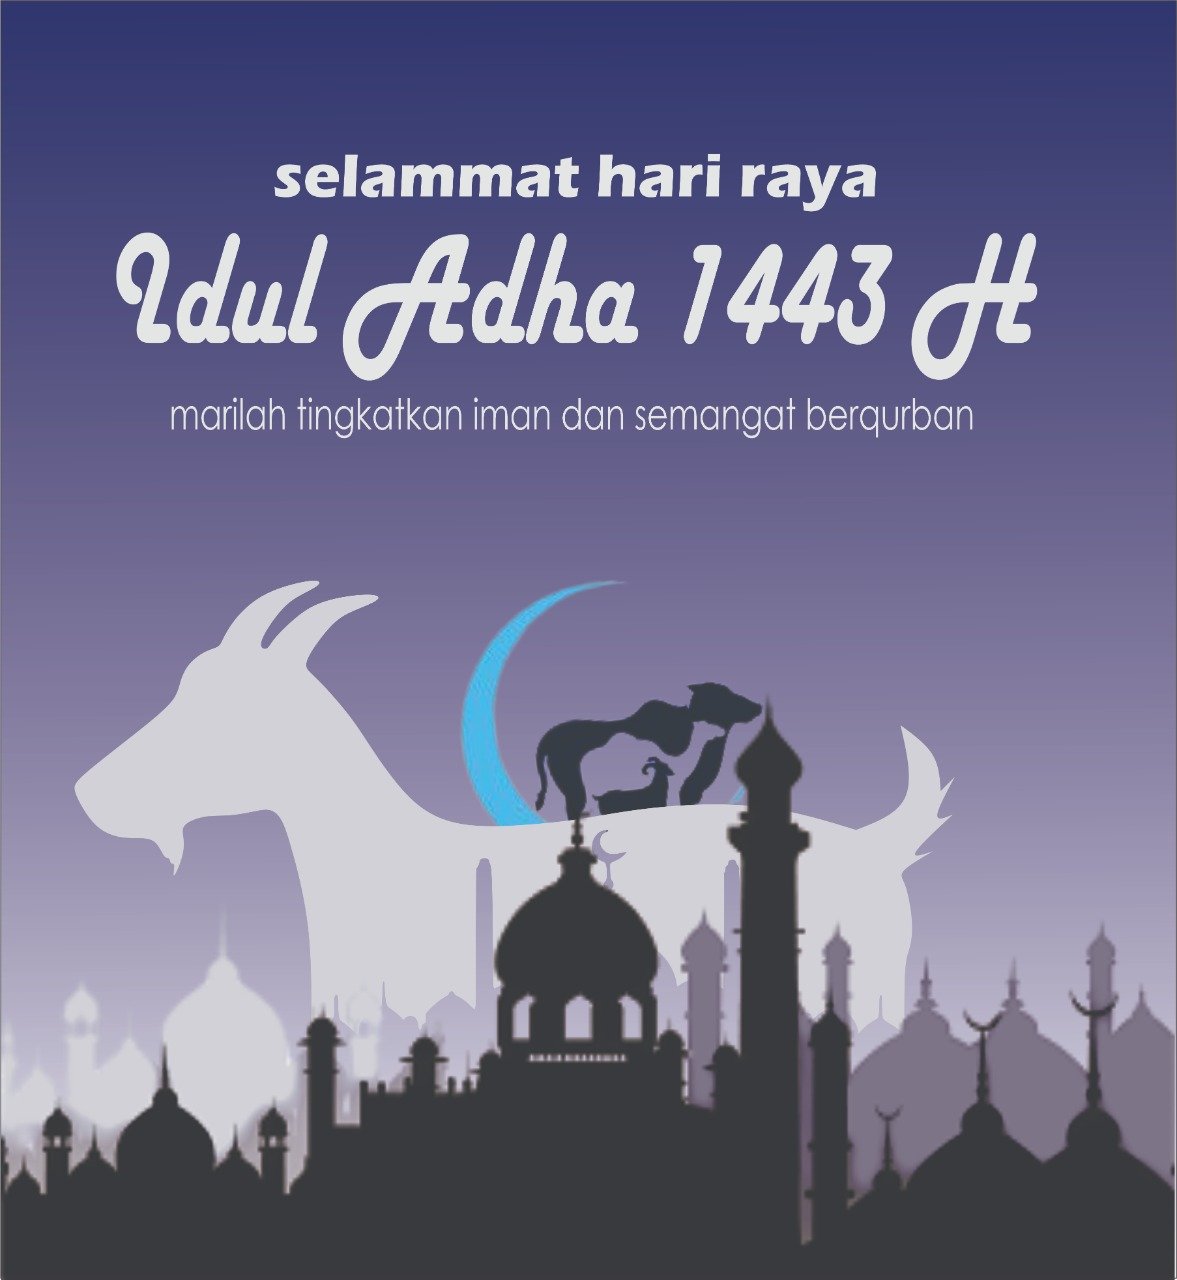 KUMPULAN Gambar dan Kata Mutiara Selamat Idul Adha 1443 H, Tinggal Download dan Copas Lalu Bagikan di Medsos Kalian !